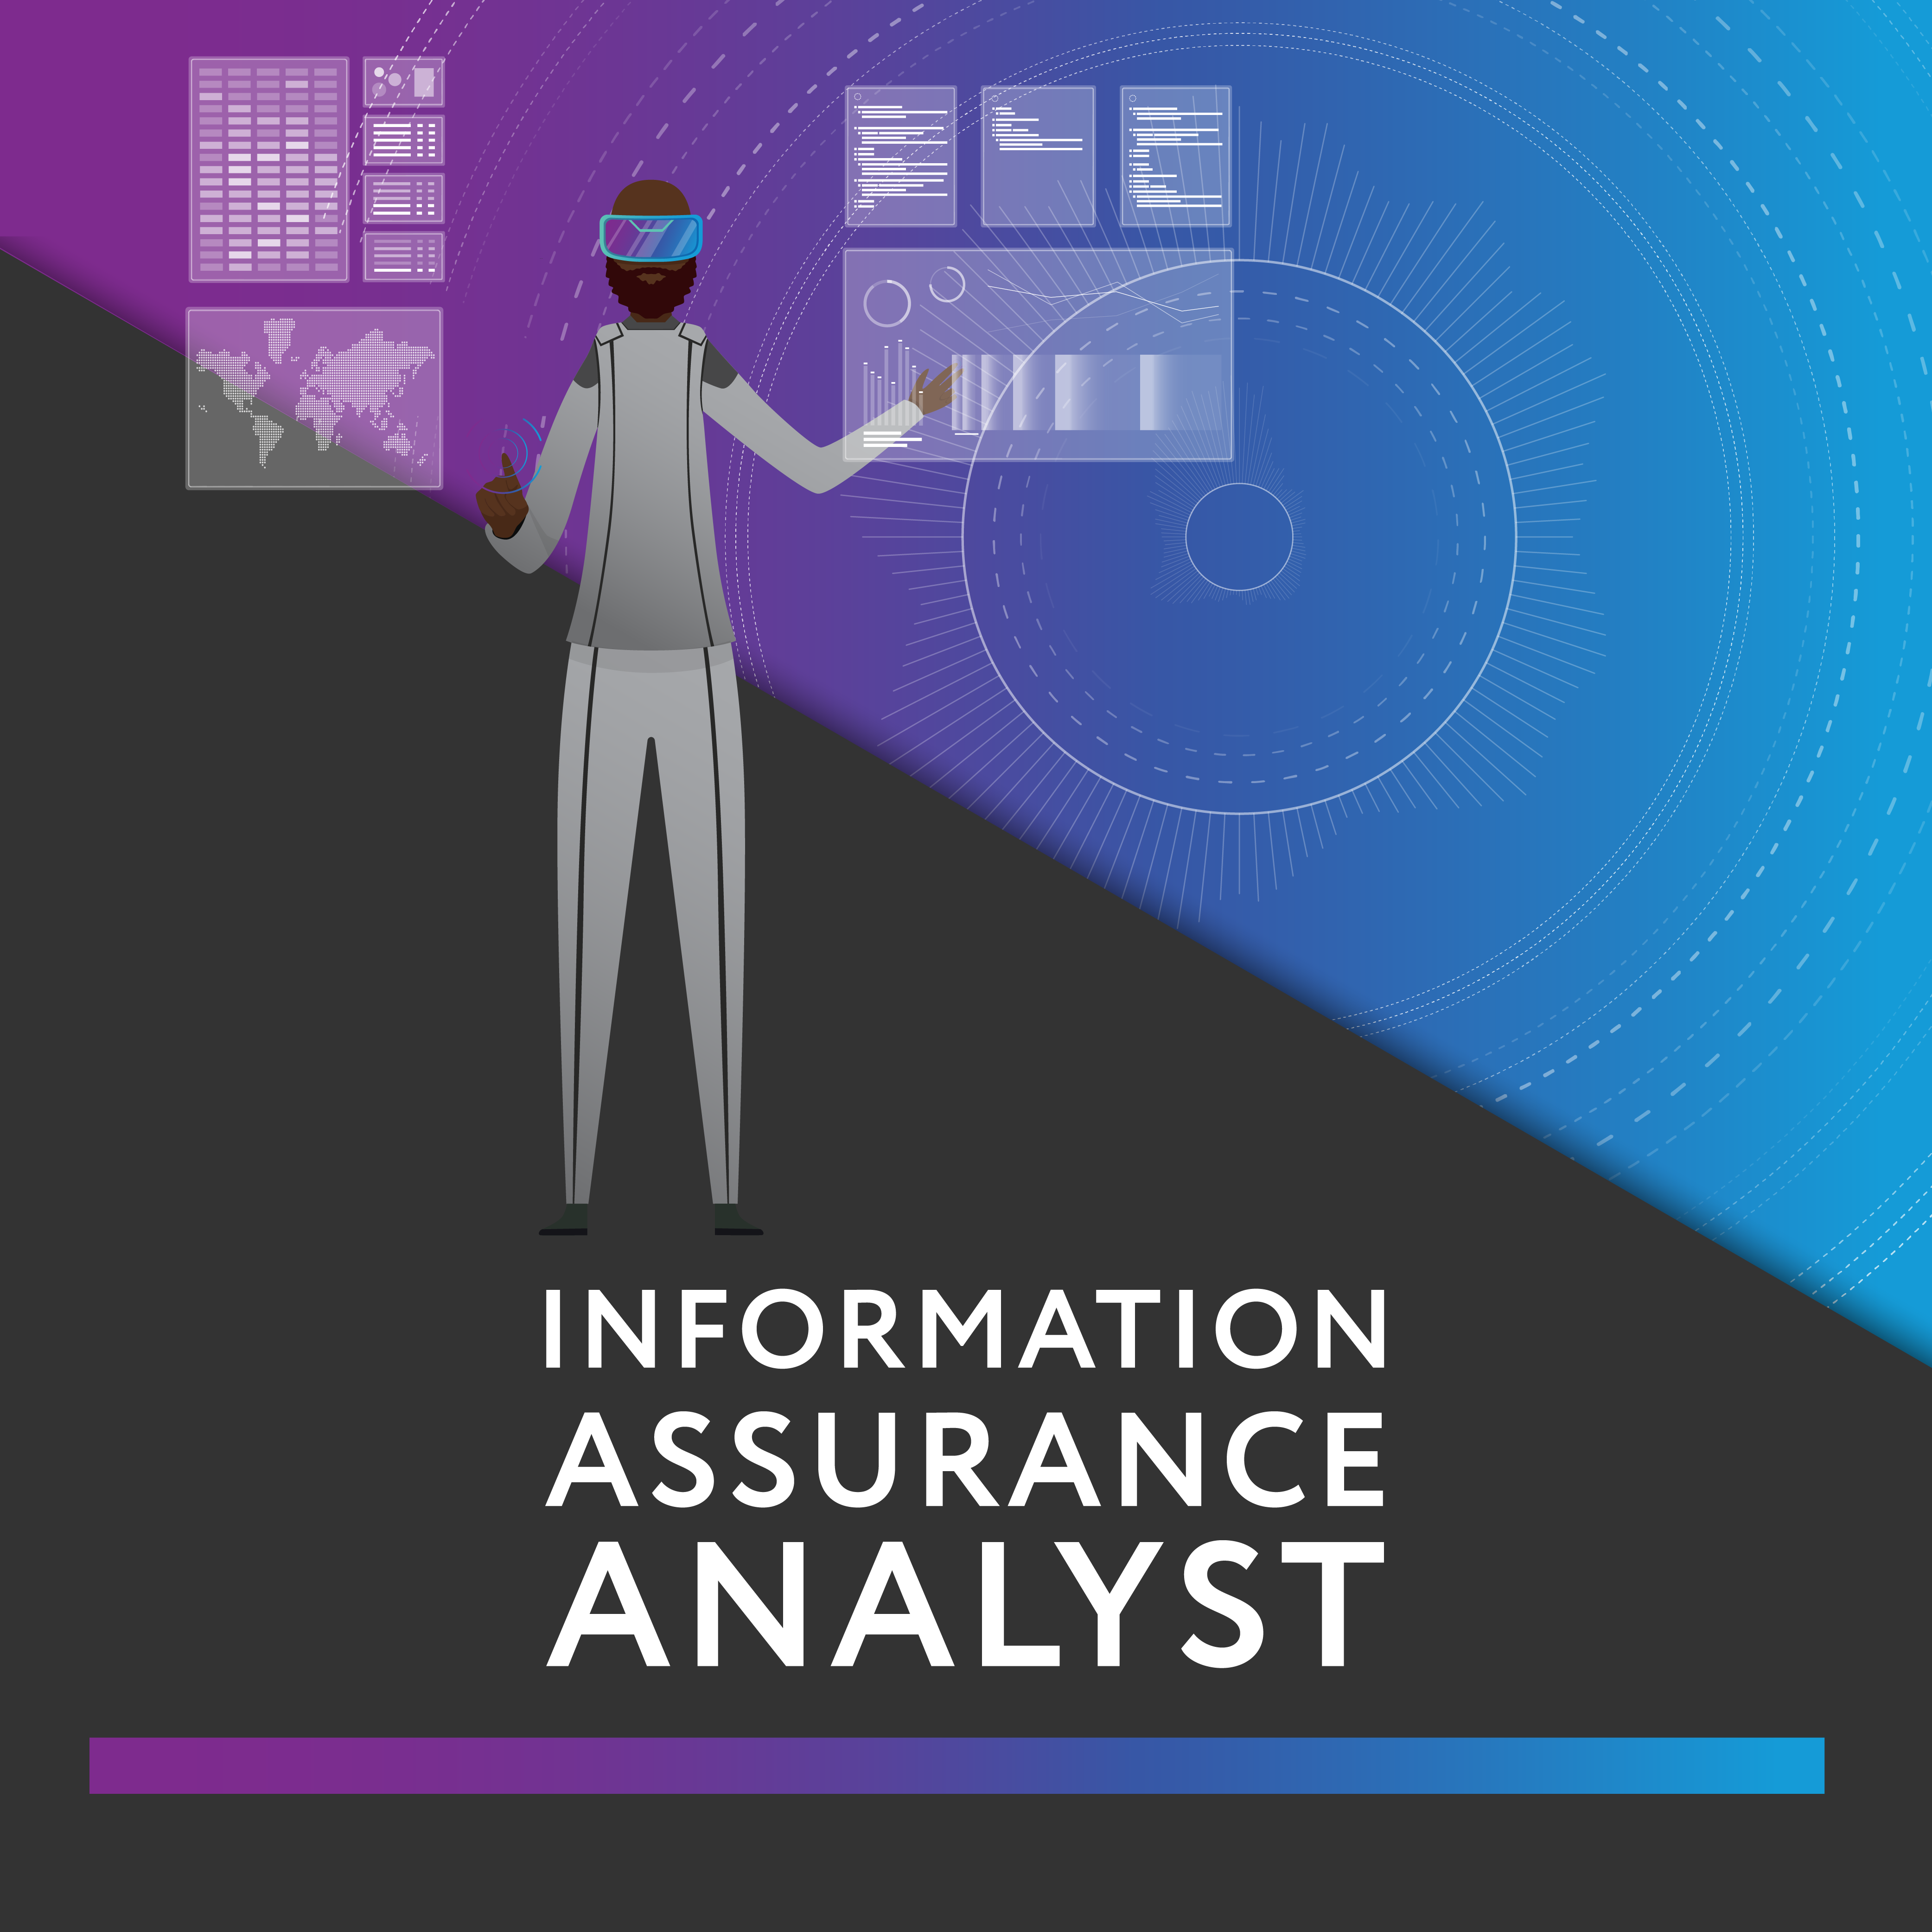 Information Assurance Analyst